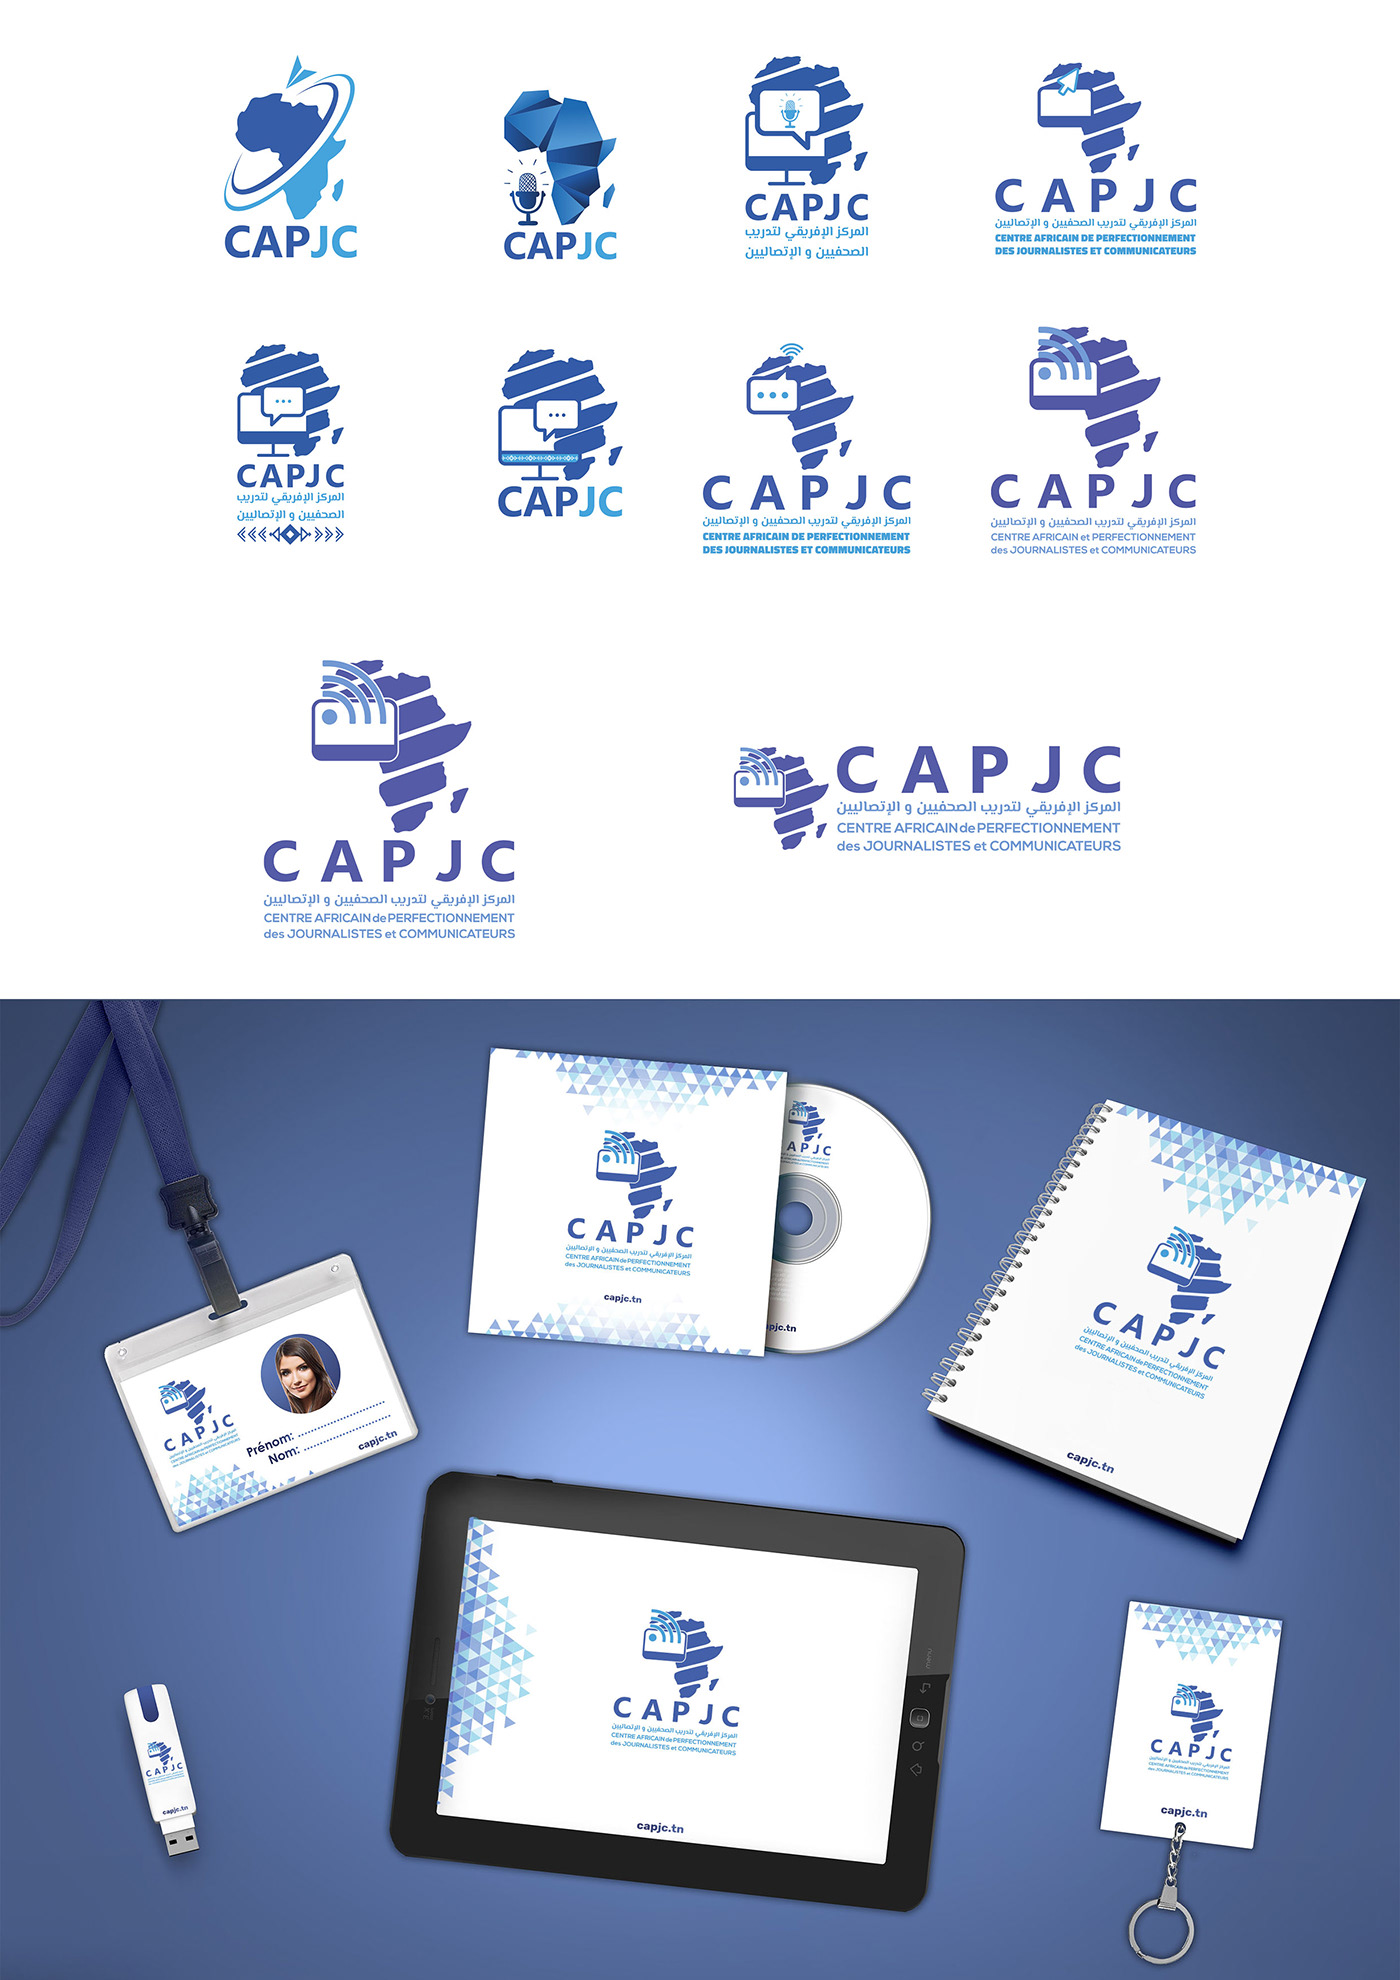 charte graphique com creation design graphic charter logo publicité capjc fest immobilier